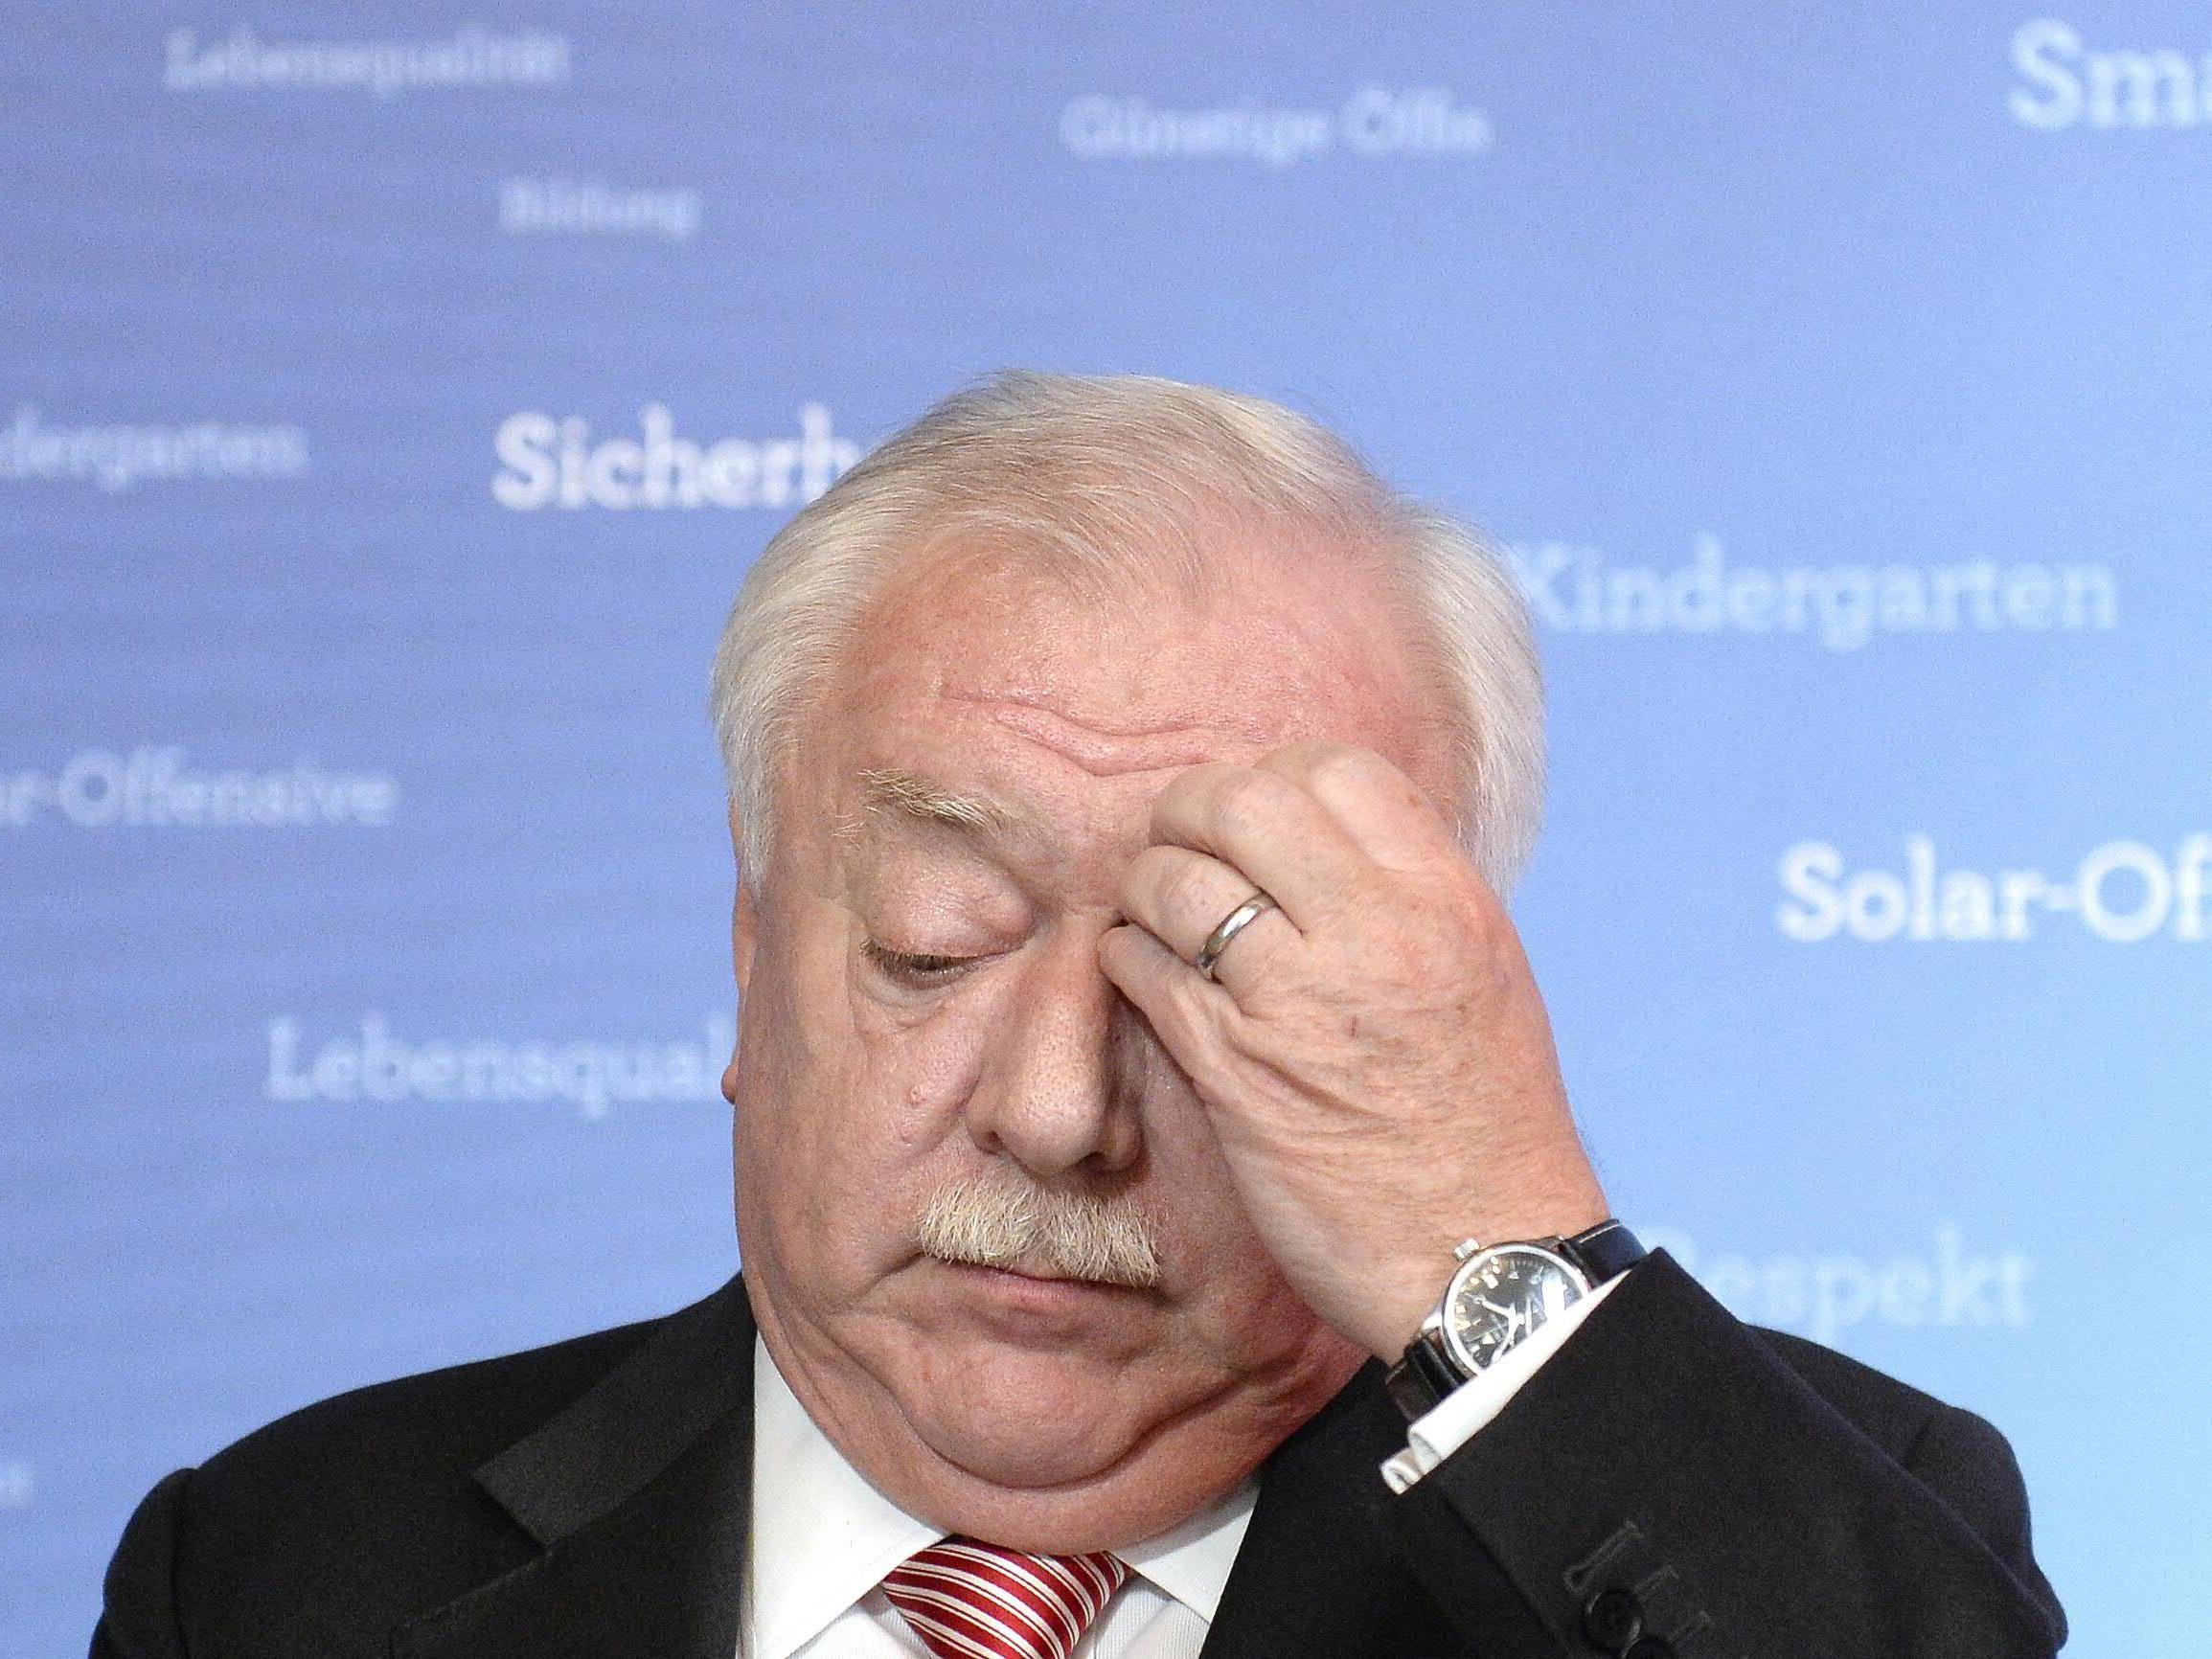 Michael Häupl schnitt bei der Wien-Wahl besser ab, als ursprünglich prognostiziert.